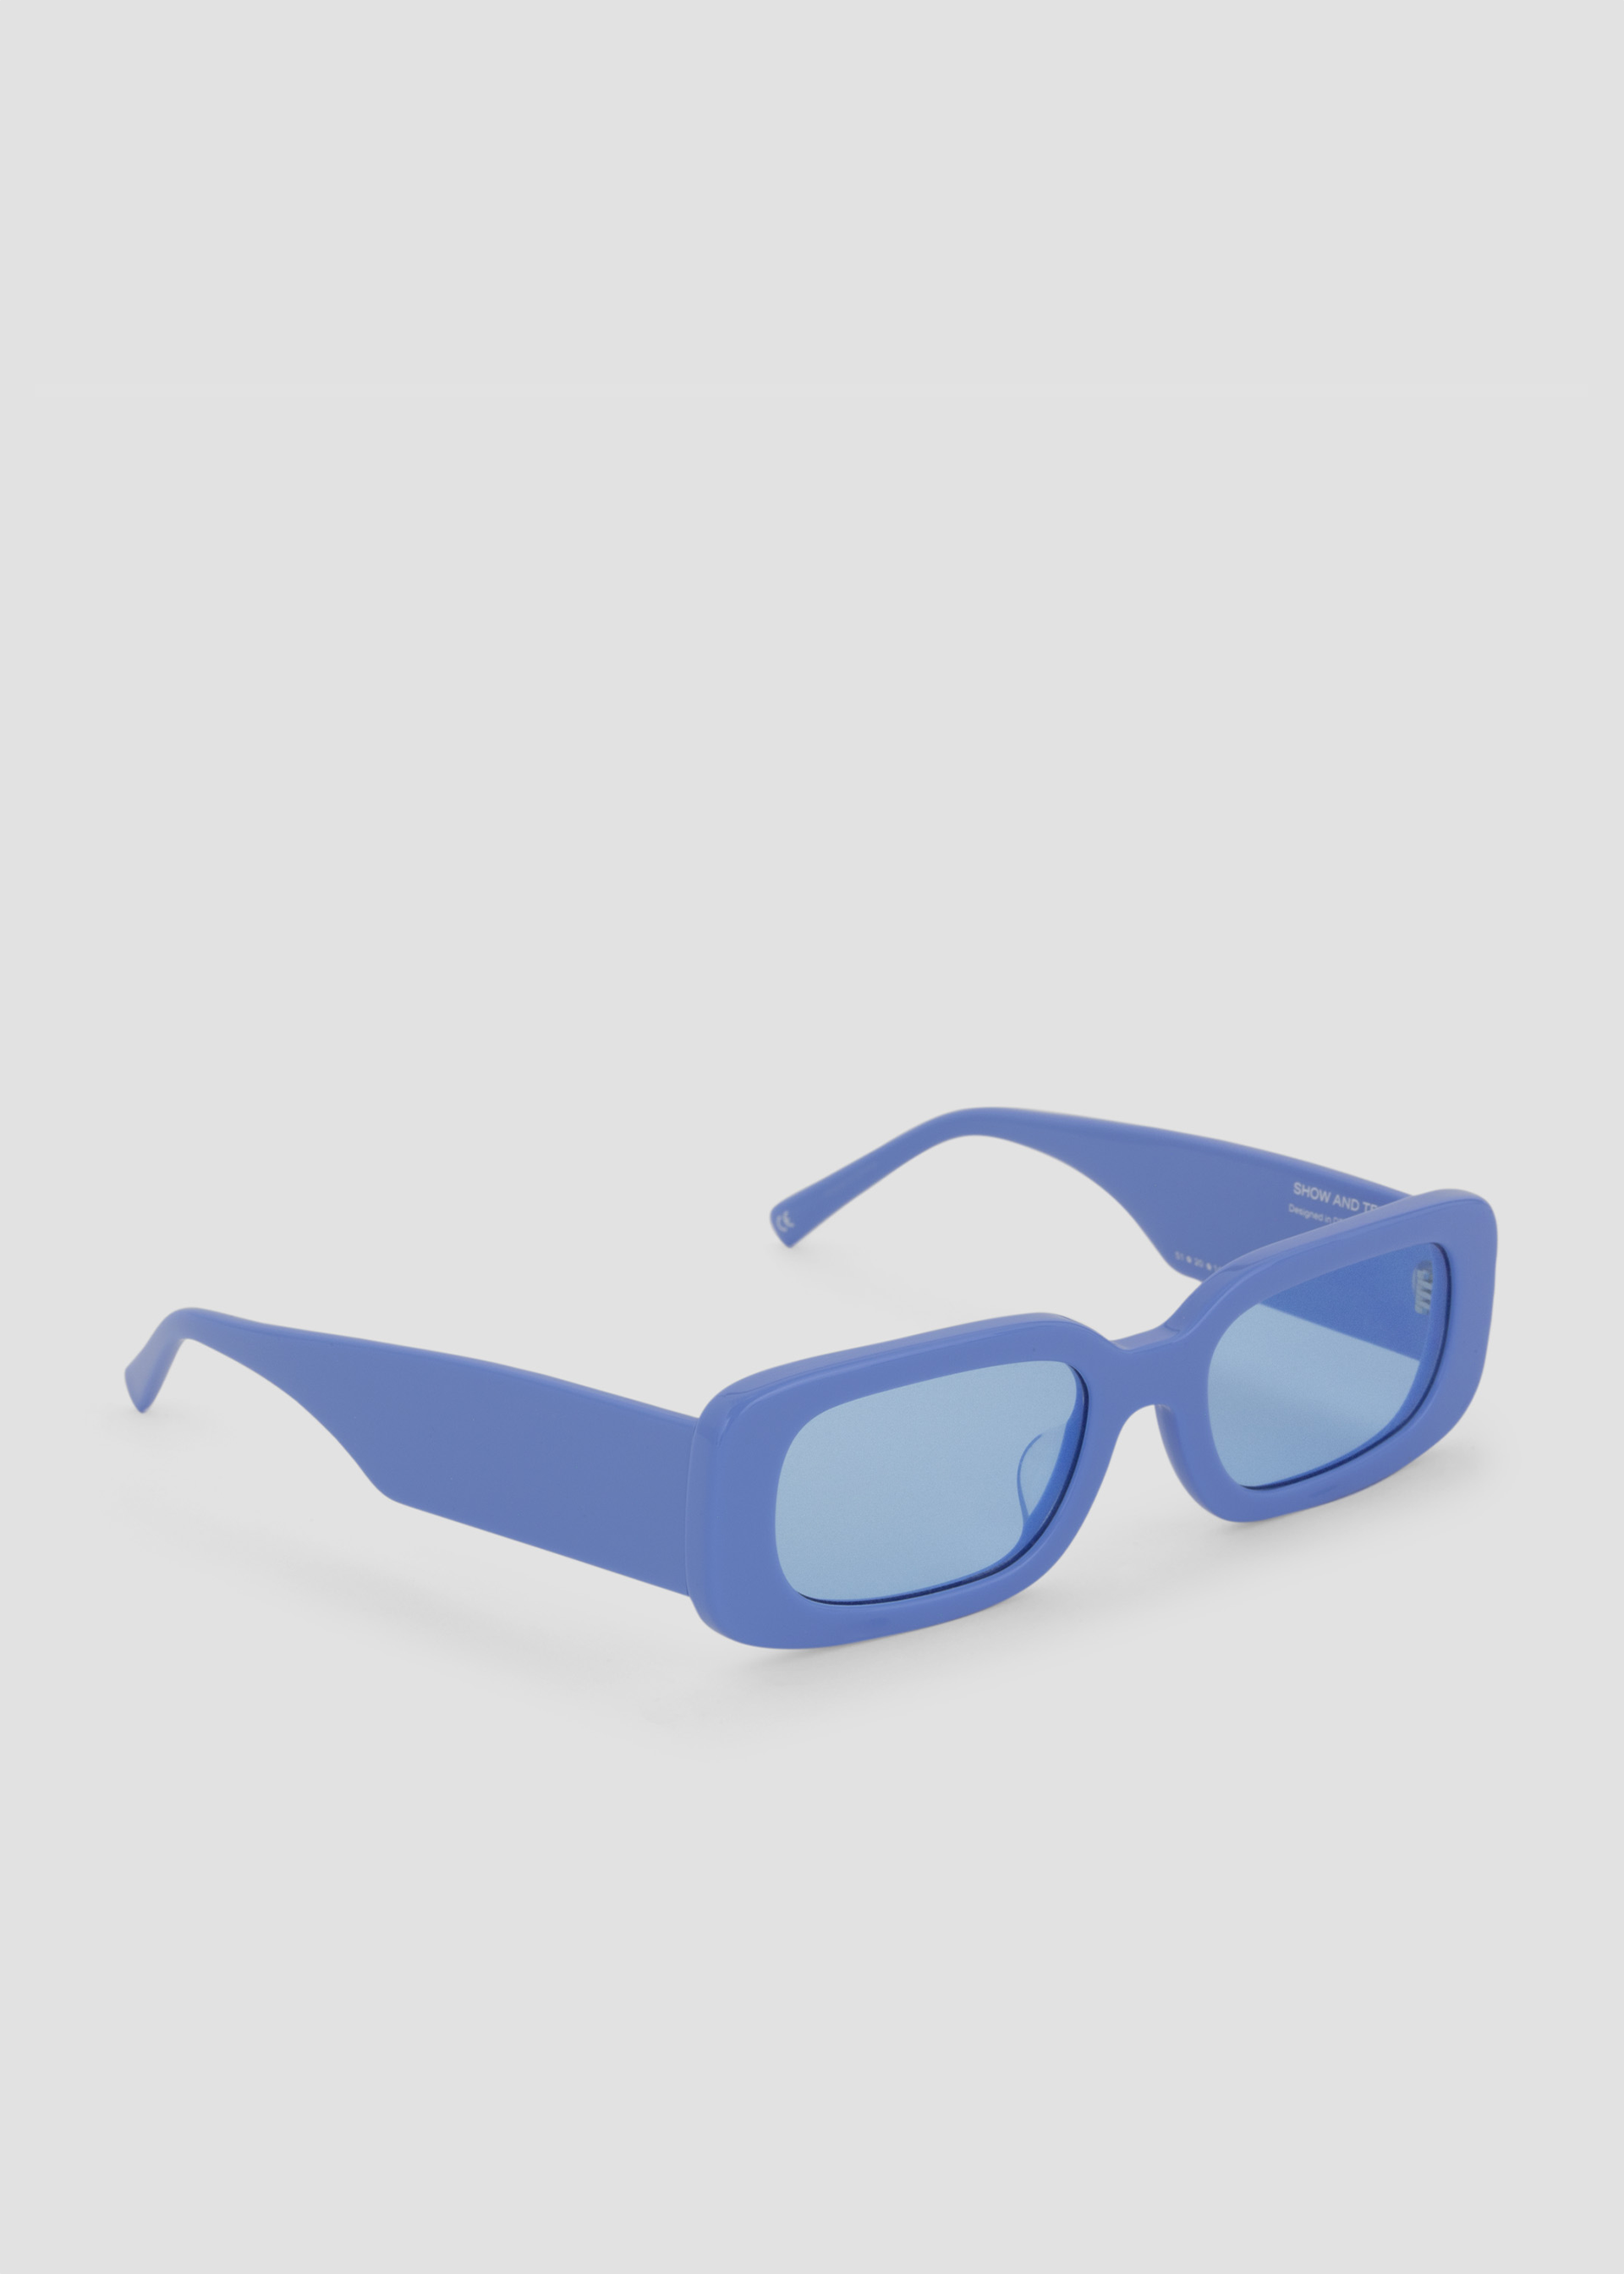 BLUE CROWN Retro Square Plastic Sunglasses - BROWN, Tillys, Salesforce  Commerce Cloud